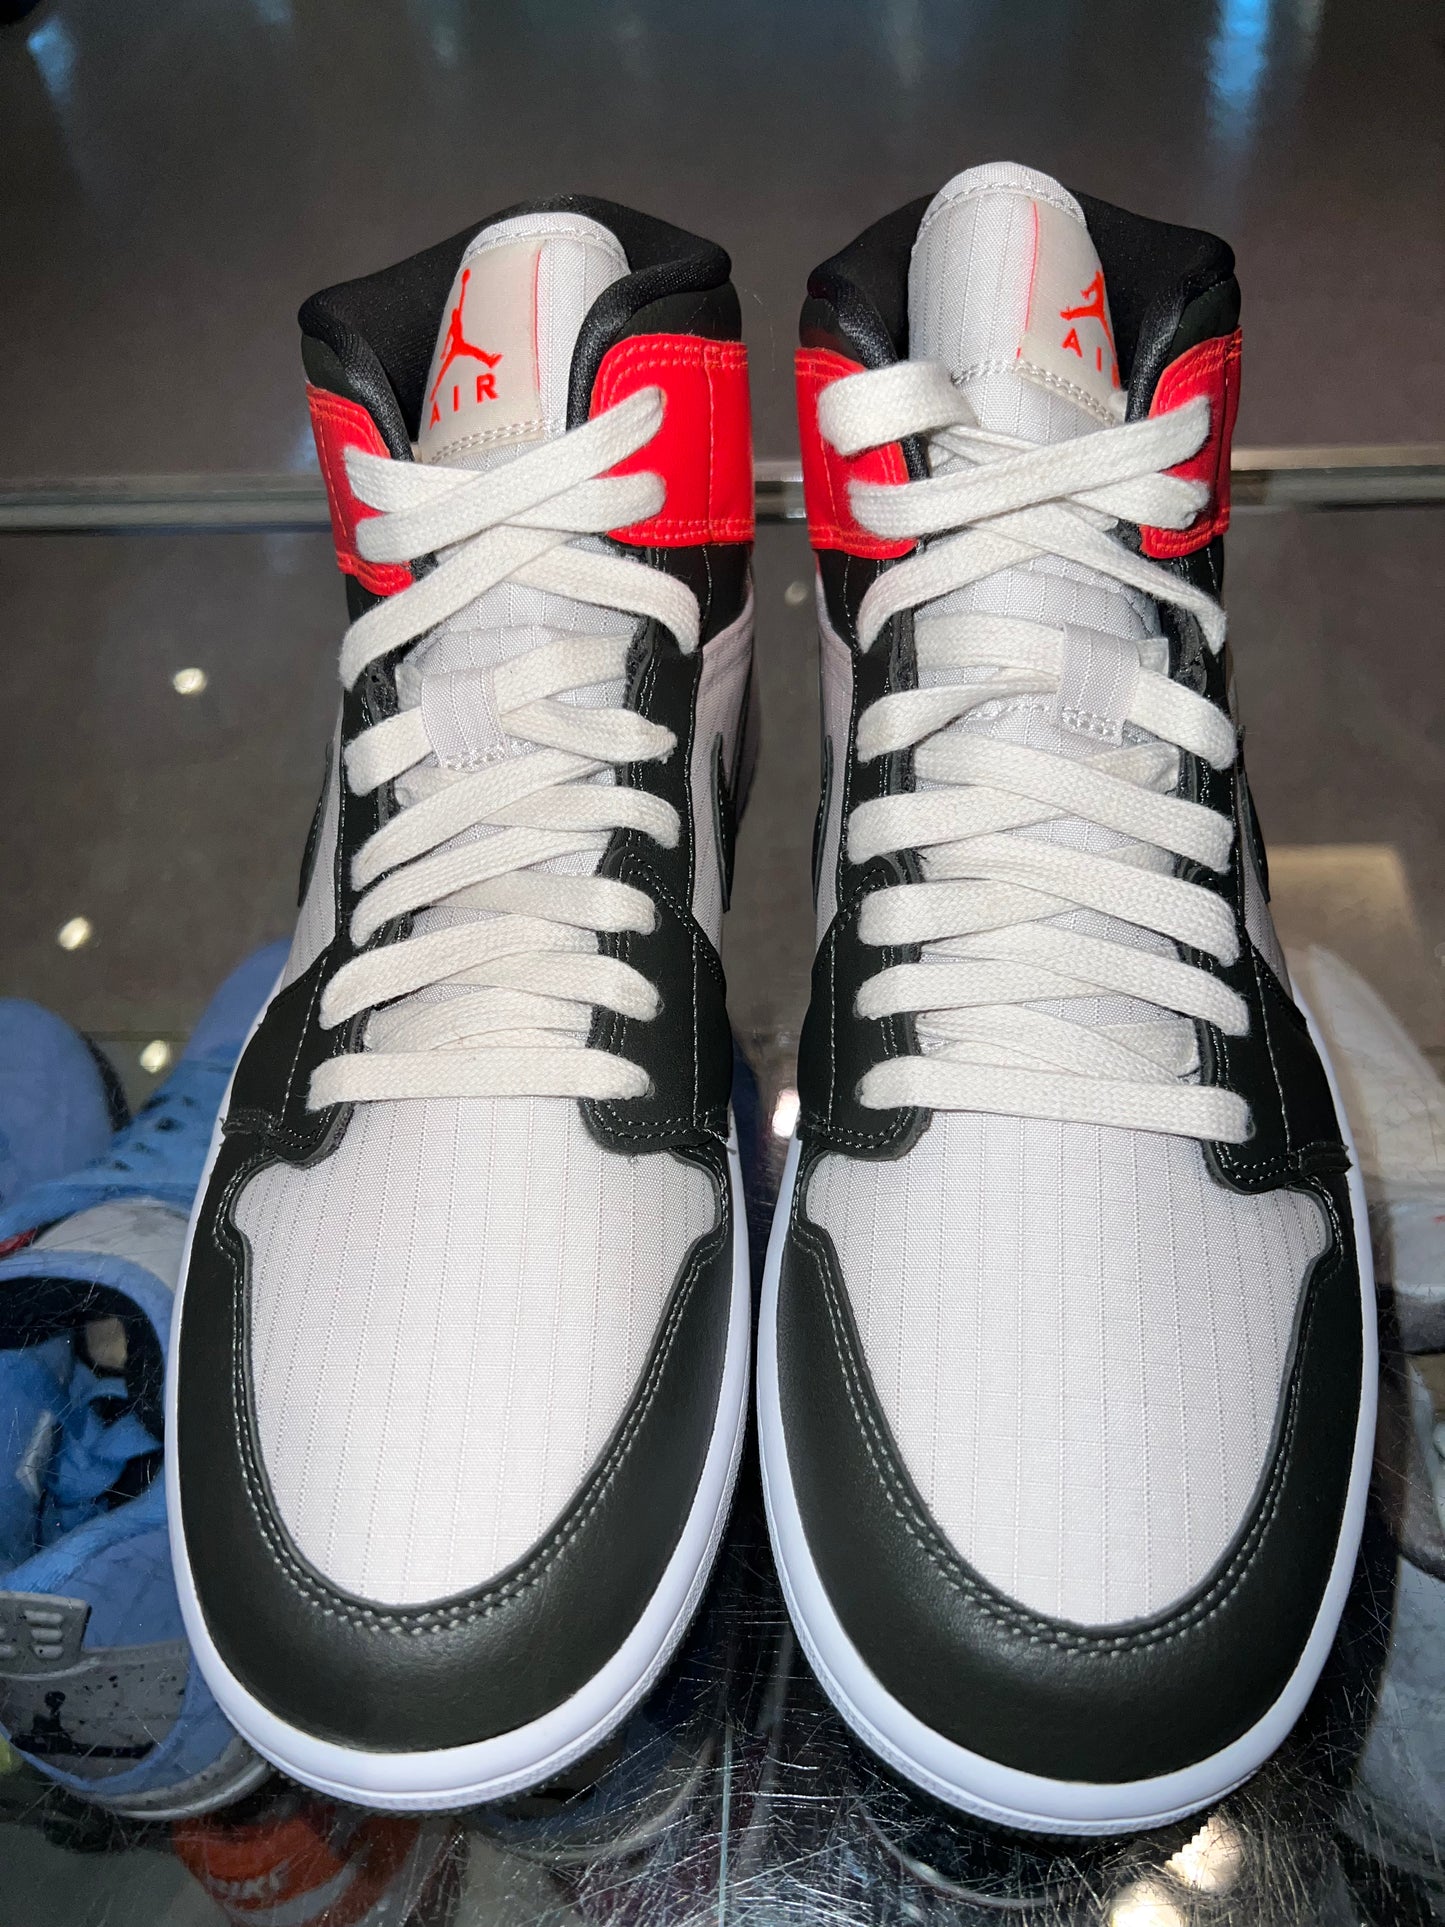 Size 9.5 (11w) Air Jordan 1 Mid “Newsprint Orewood Brown” Brand New (Mall)